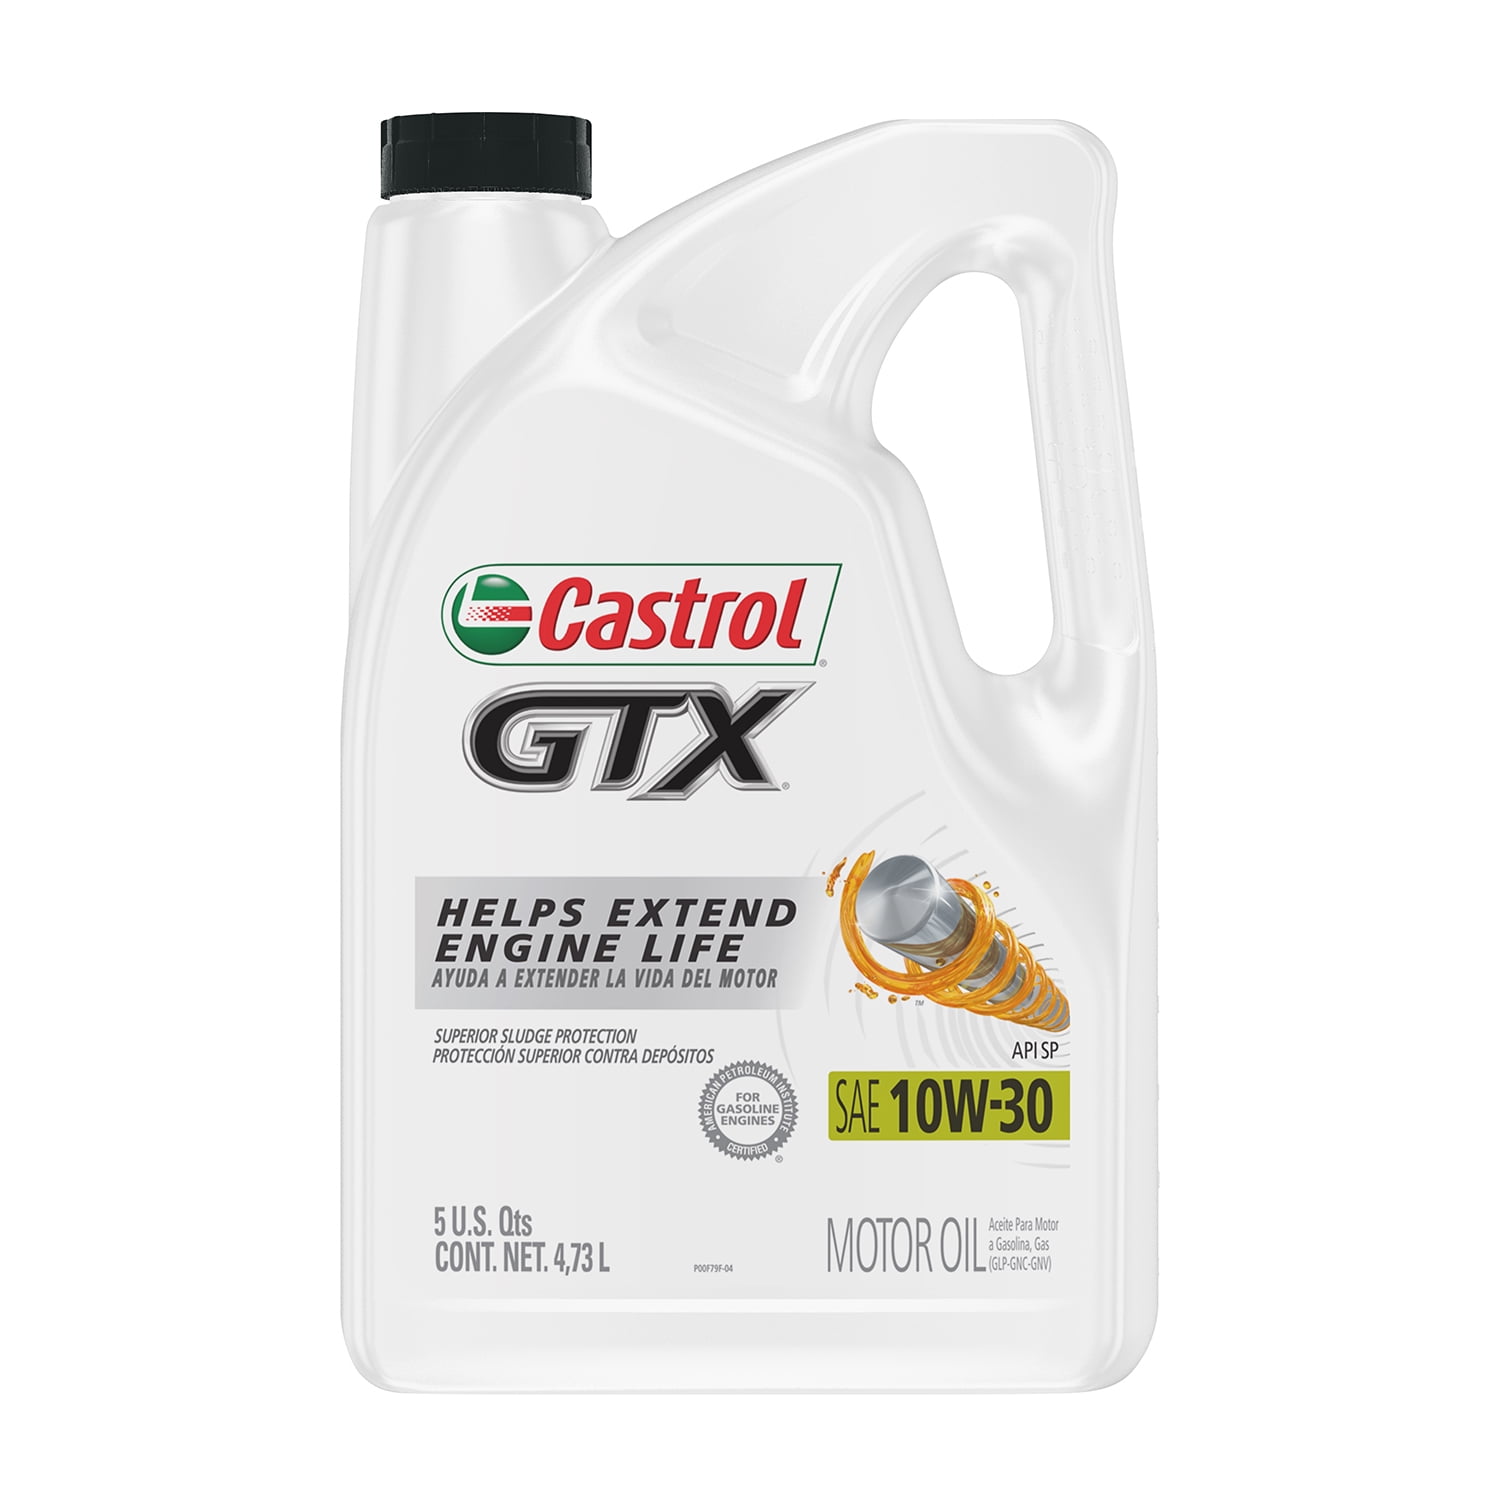 Castrol GTX 10W-30 Conventional Motor Oil, 5 Quarts